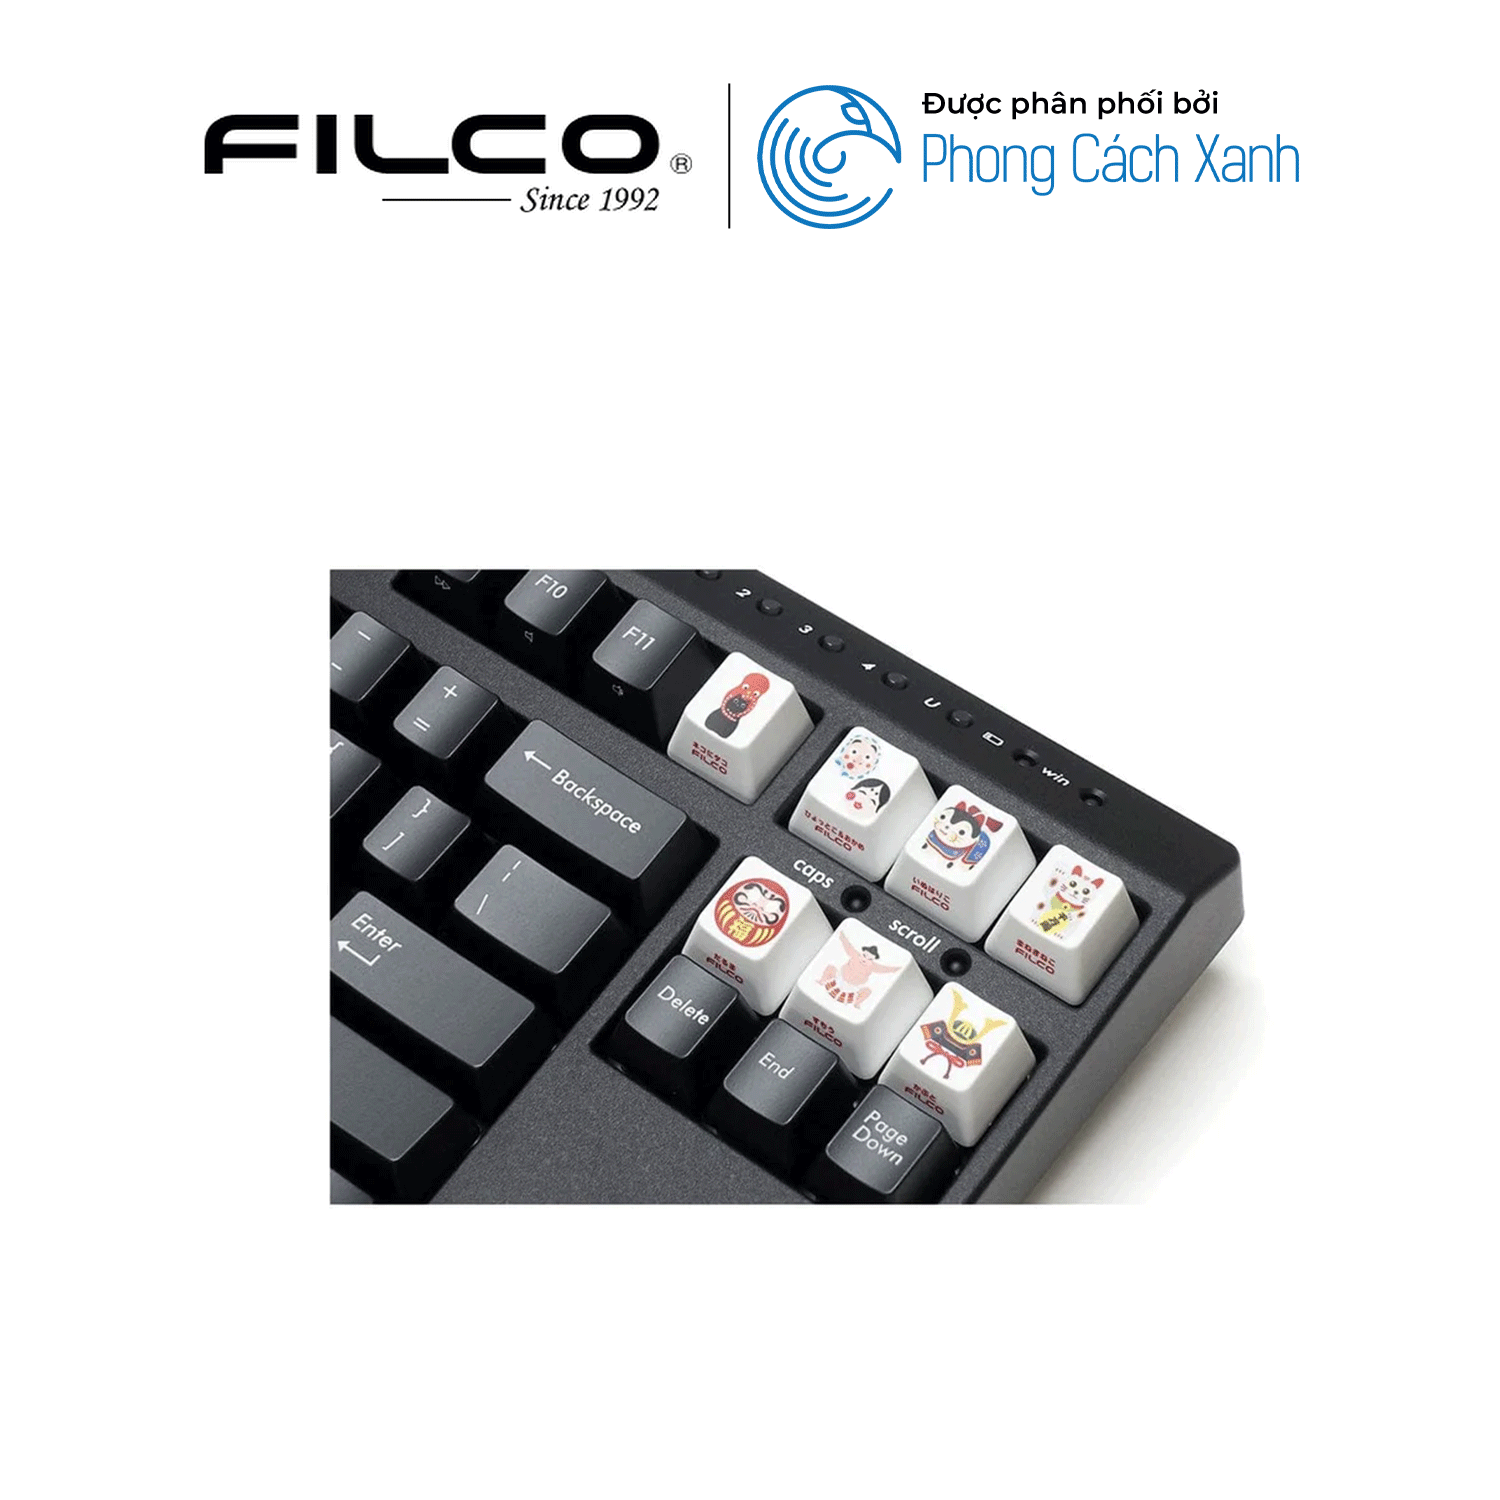 Bộ keycap Filco Lưu Niệm (9 keycap) - Hàng Chính Hãng